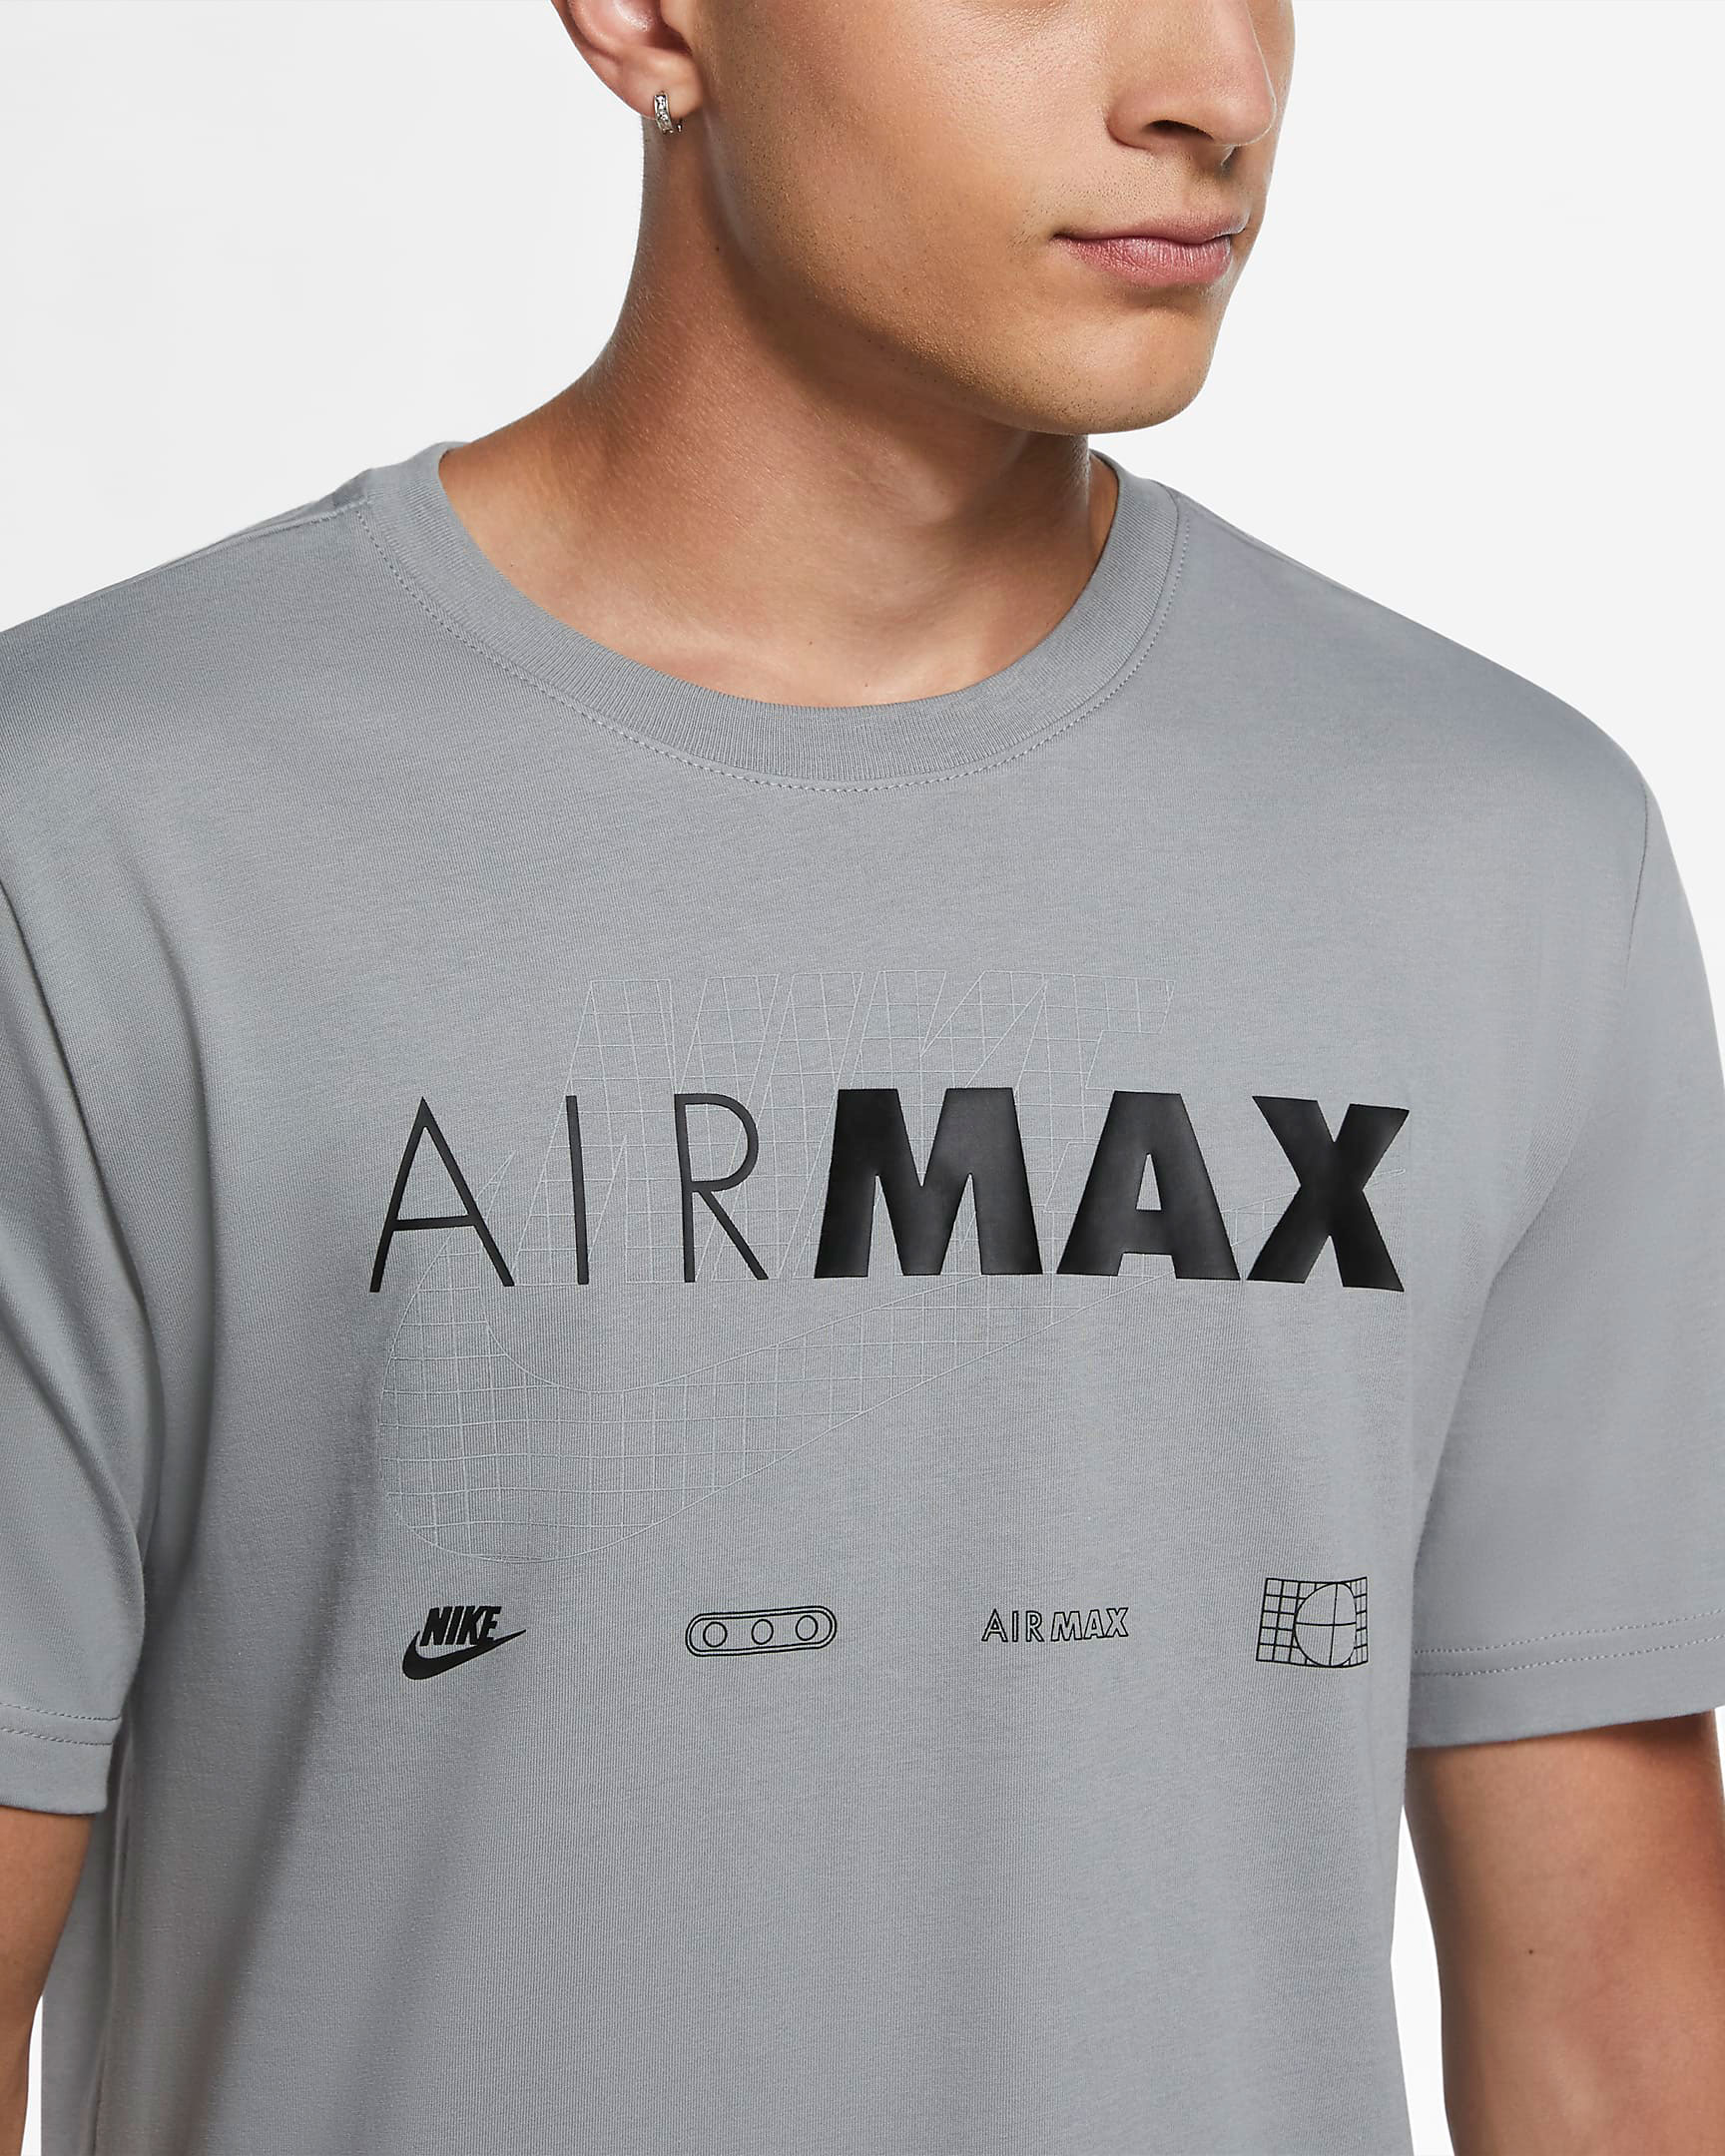 nike-air-max-95-neon-grey-t-shirt-match